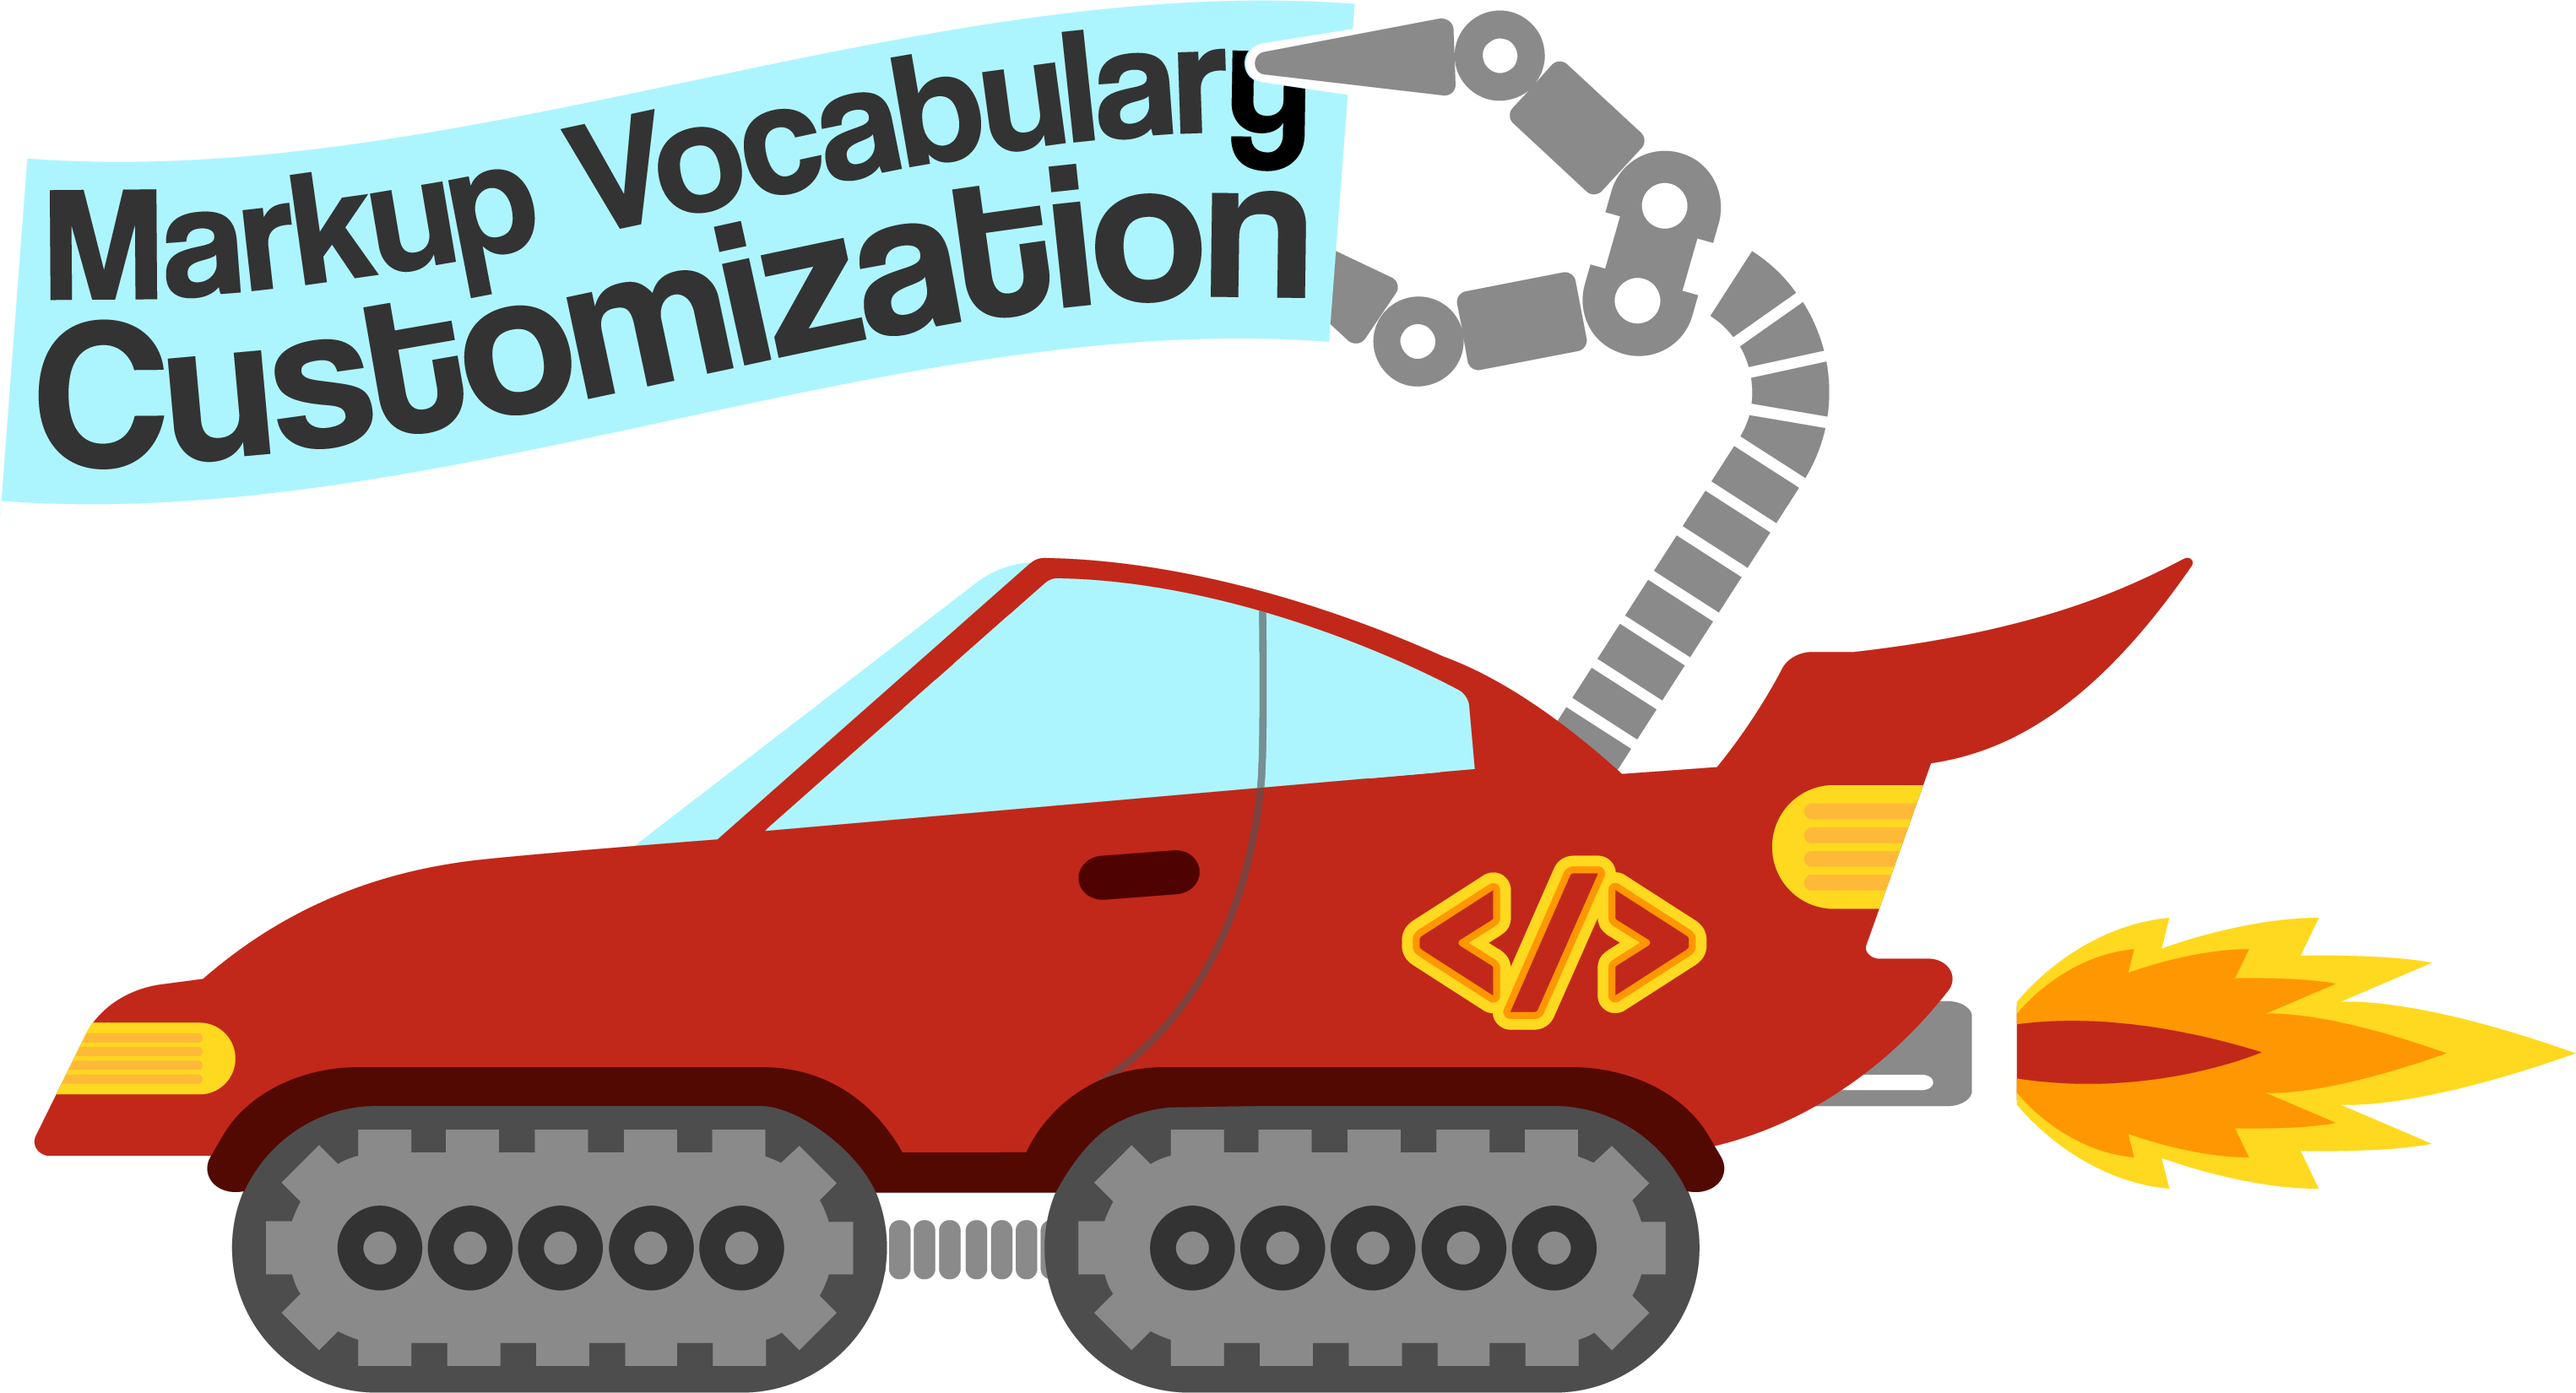 Symposium on Markup Vocabulary Customization logo